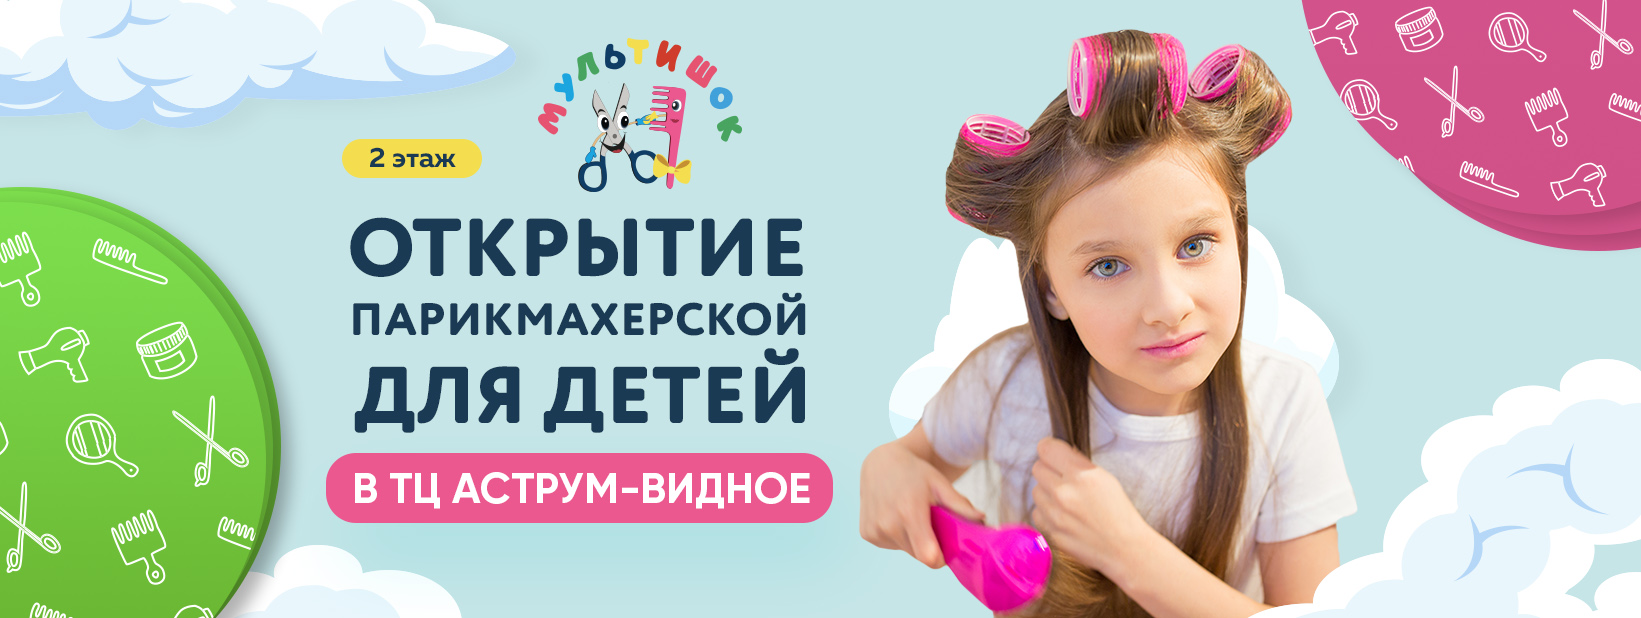 Парикмахерская для детей «Мультишок» открылась в ТЦ «Аструм-Видное»